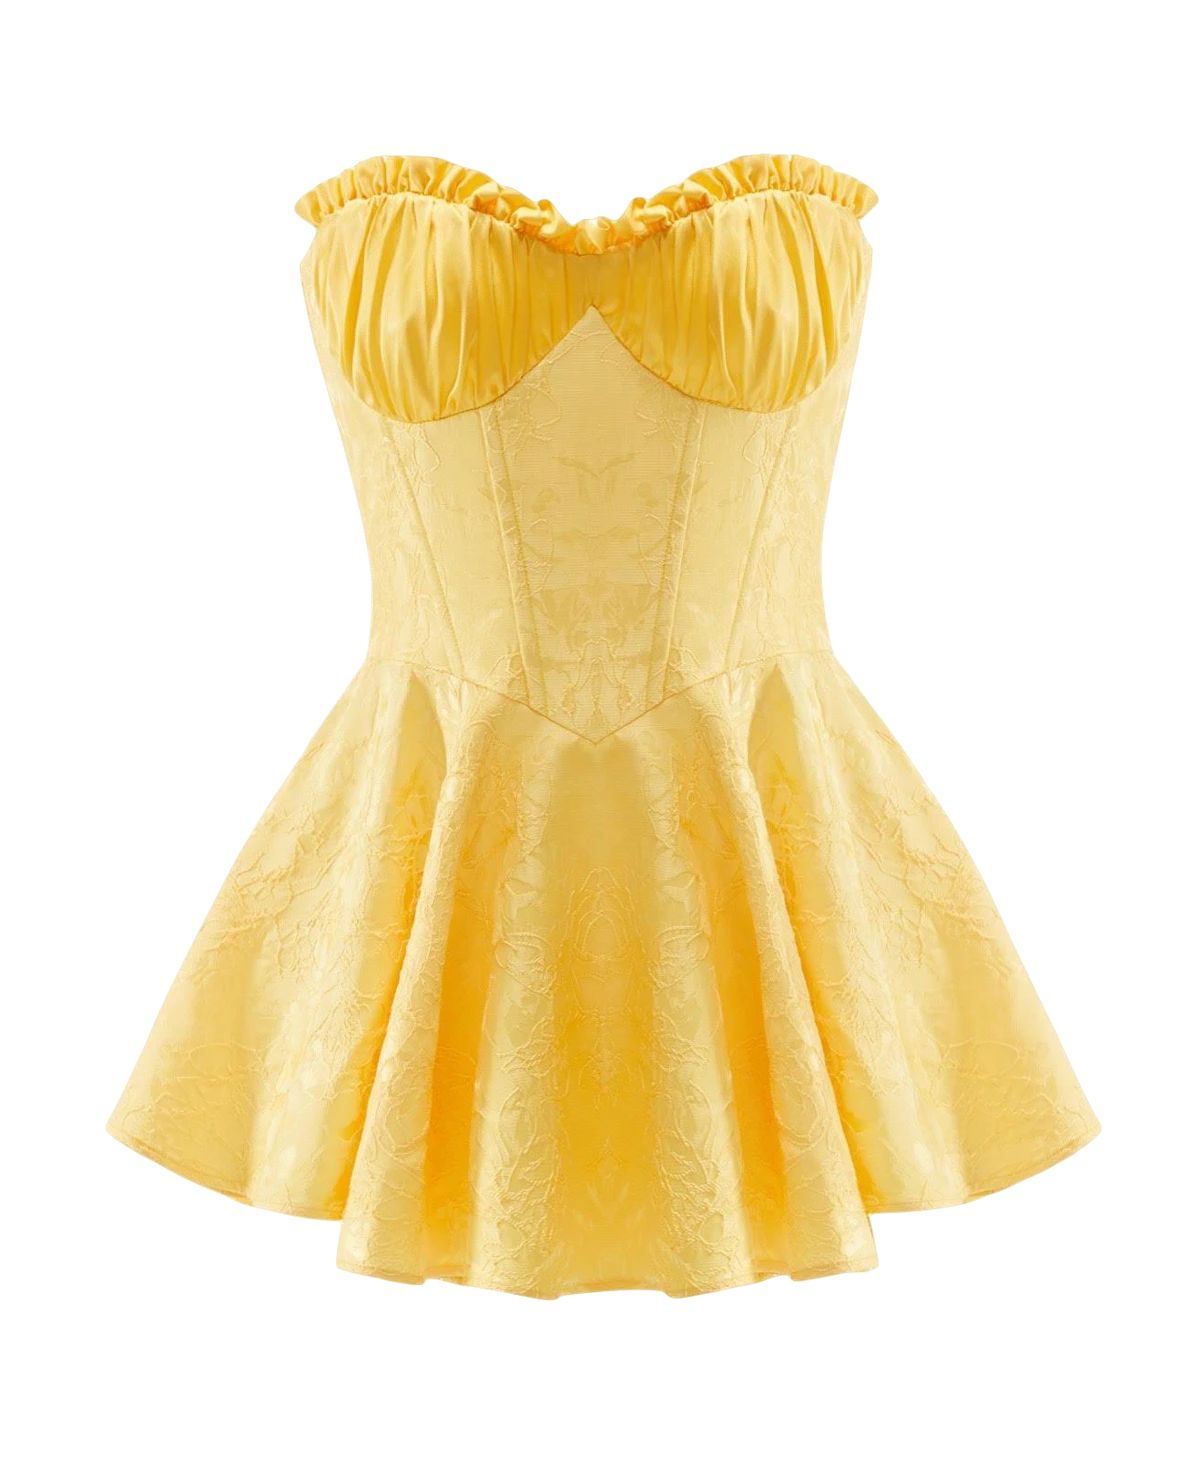 Shop Airina Dress (Yellow) from Nana Jacqueline at Seezona | Seezona | Seezona